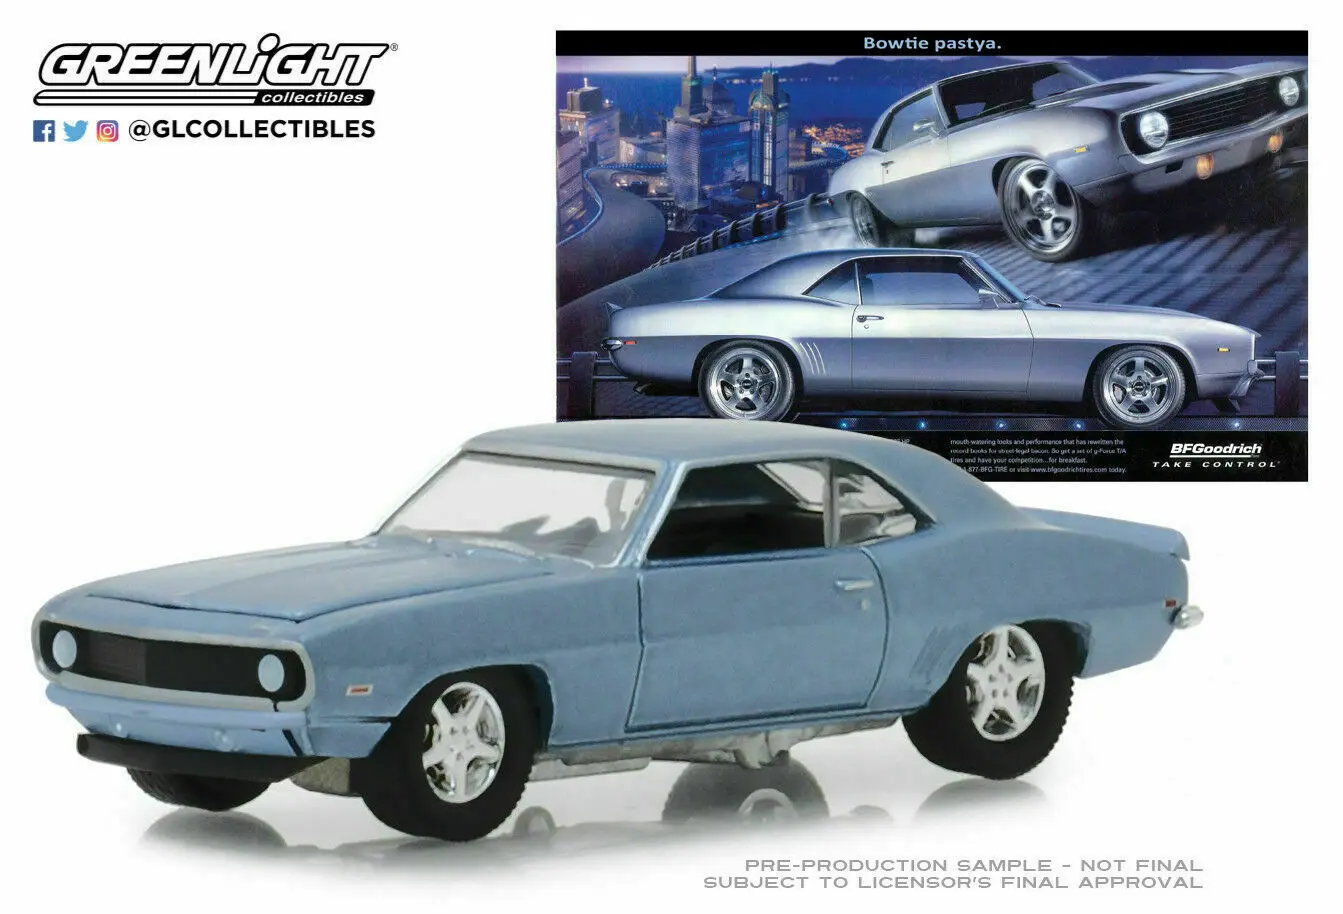 Игрушечный автомобиль GreenLight 1:64 1969 CHEVRO LET CAMARO BLUE игрушечный из сплава игрушки для